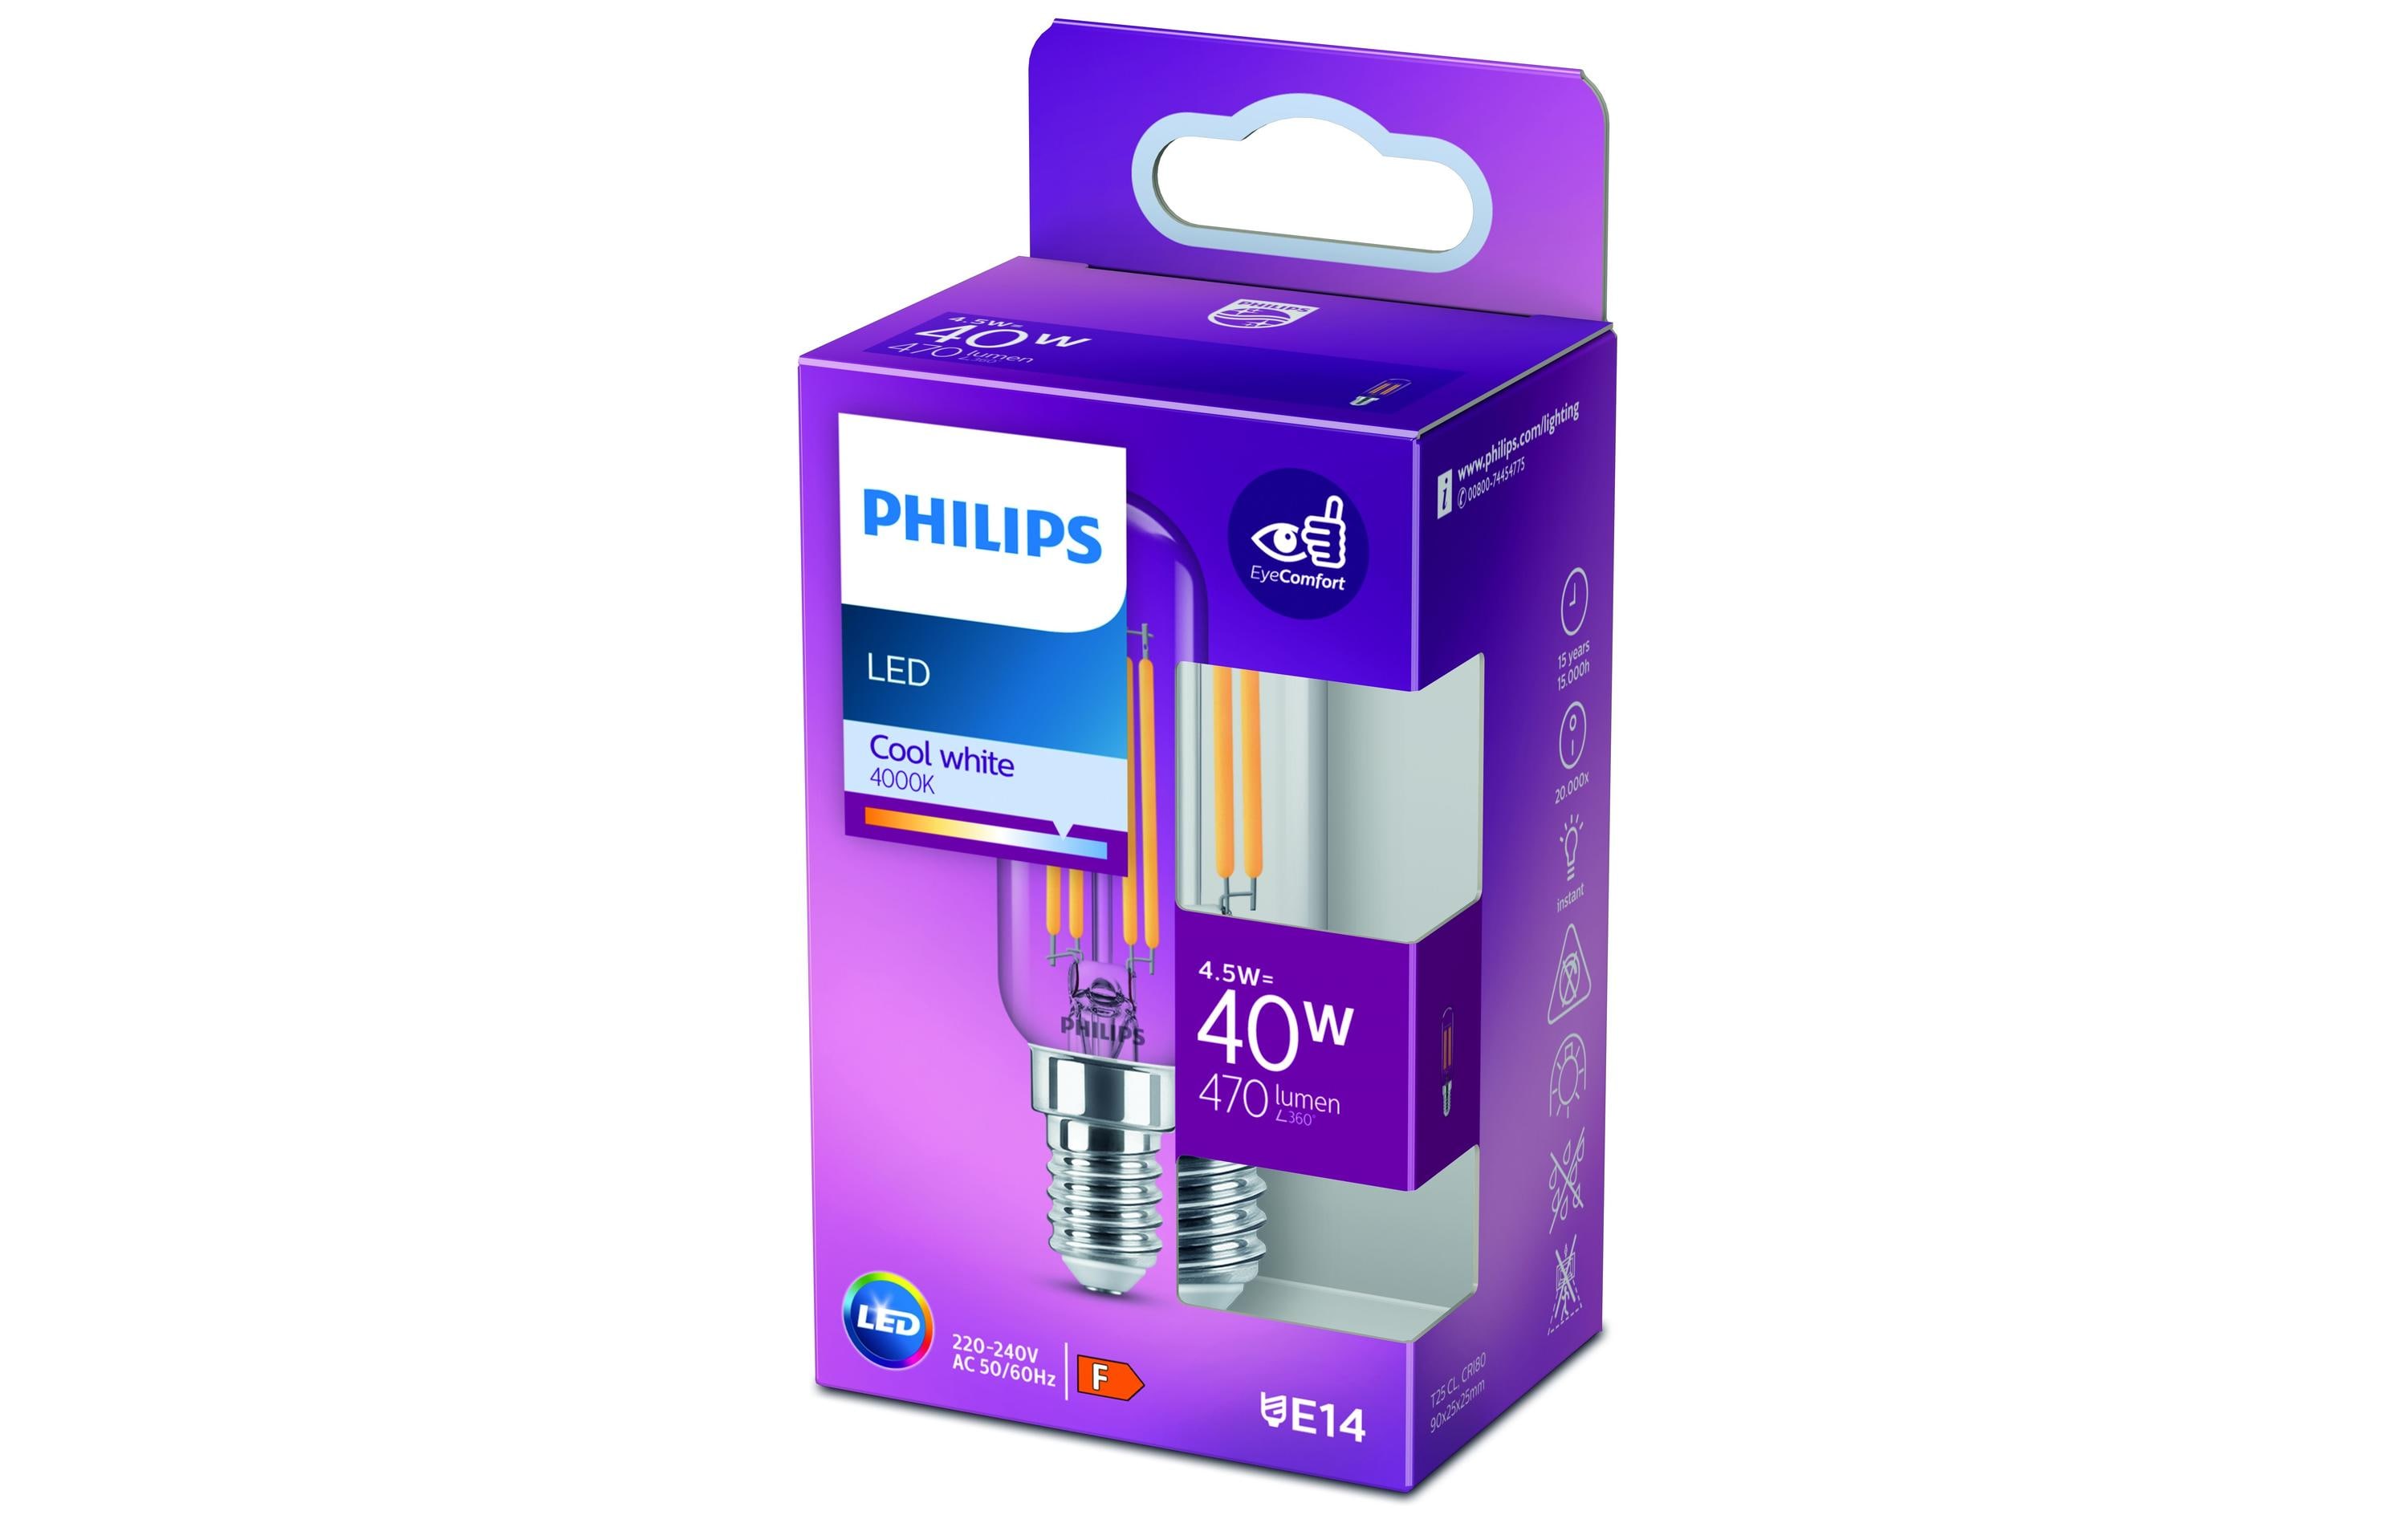 Philips LED T25L Stablampe, E14, Klar, Kaltweiss, nondim, 40W Ersatz